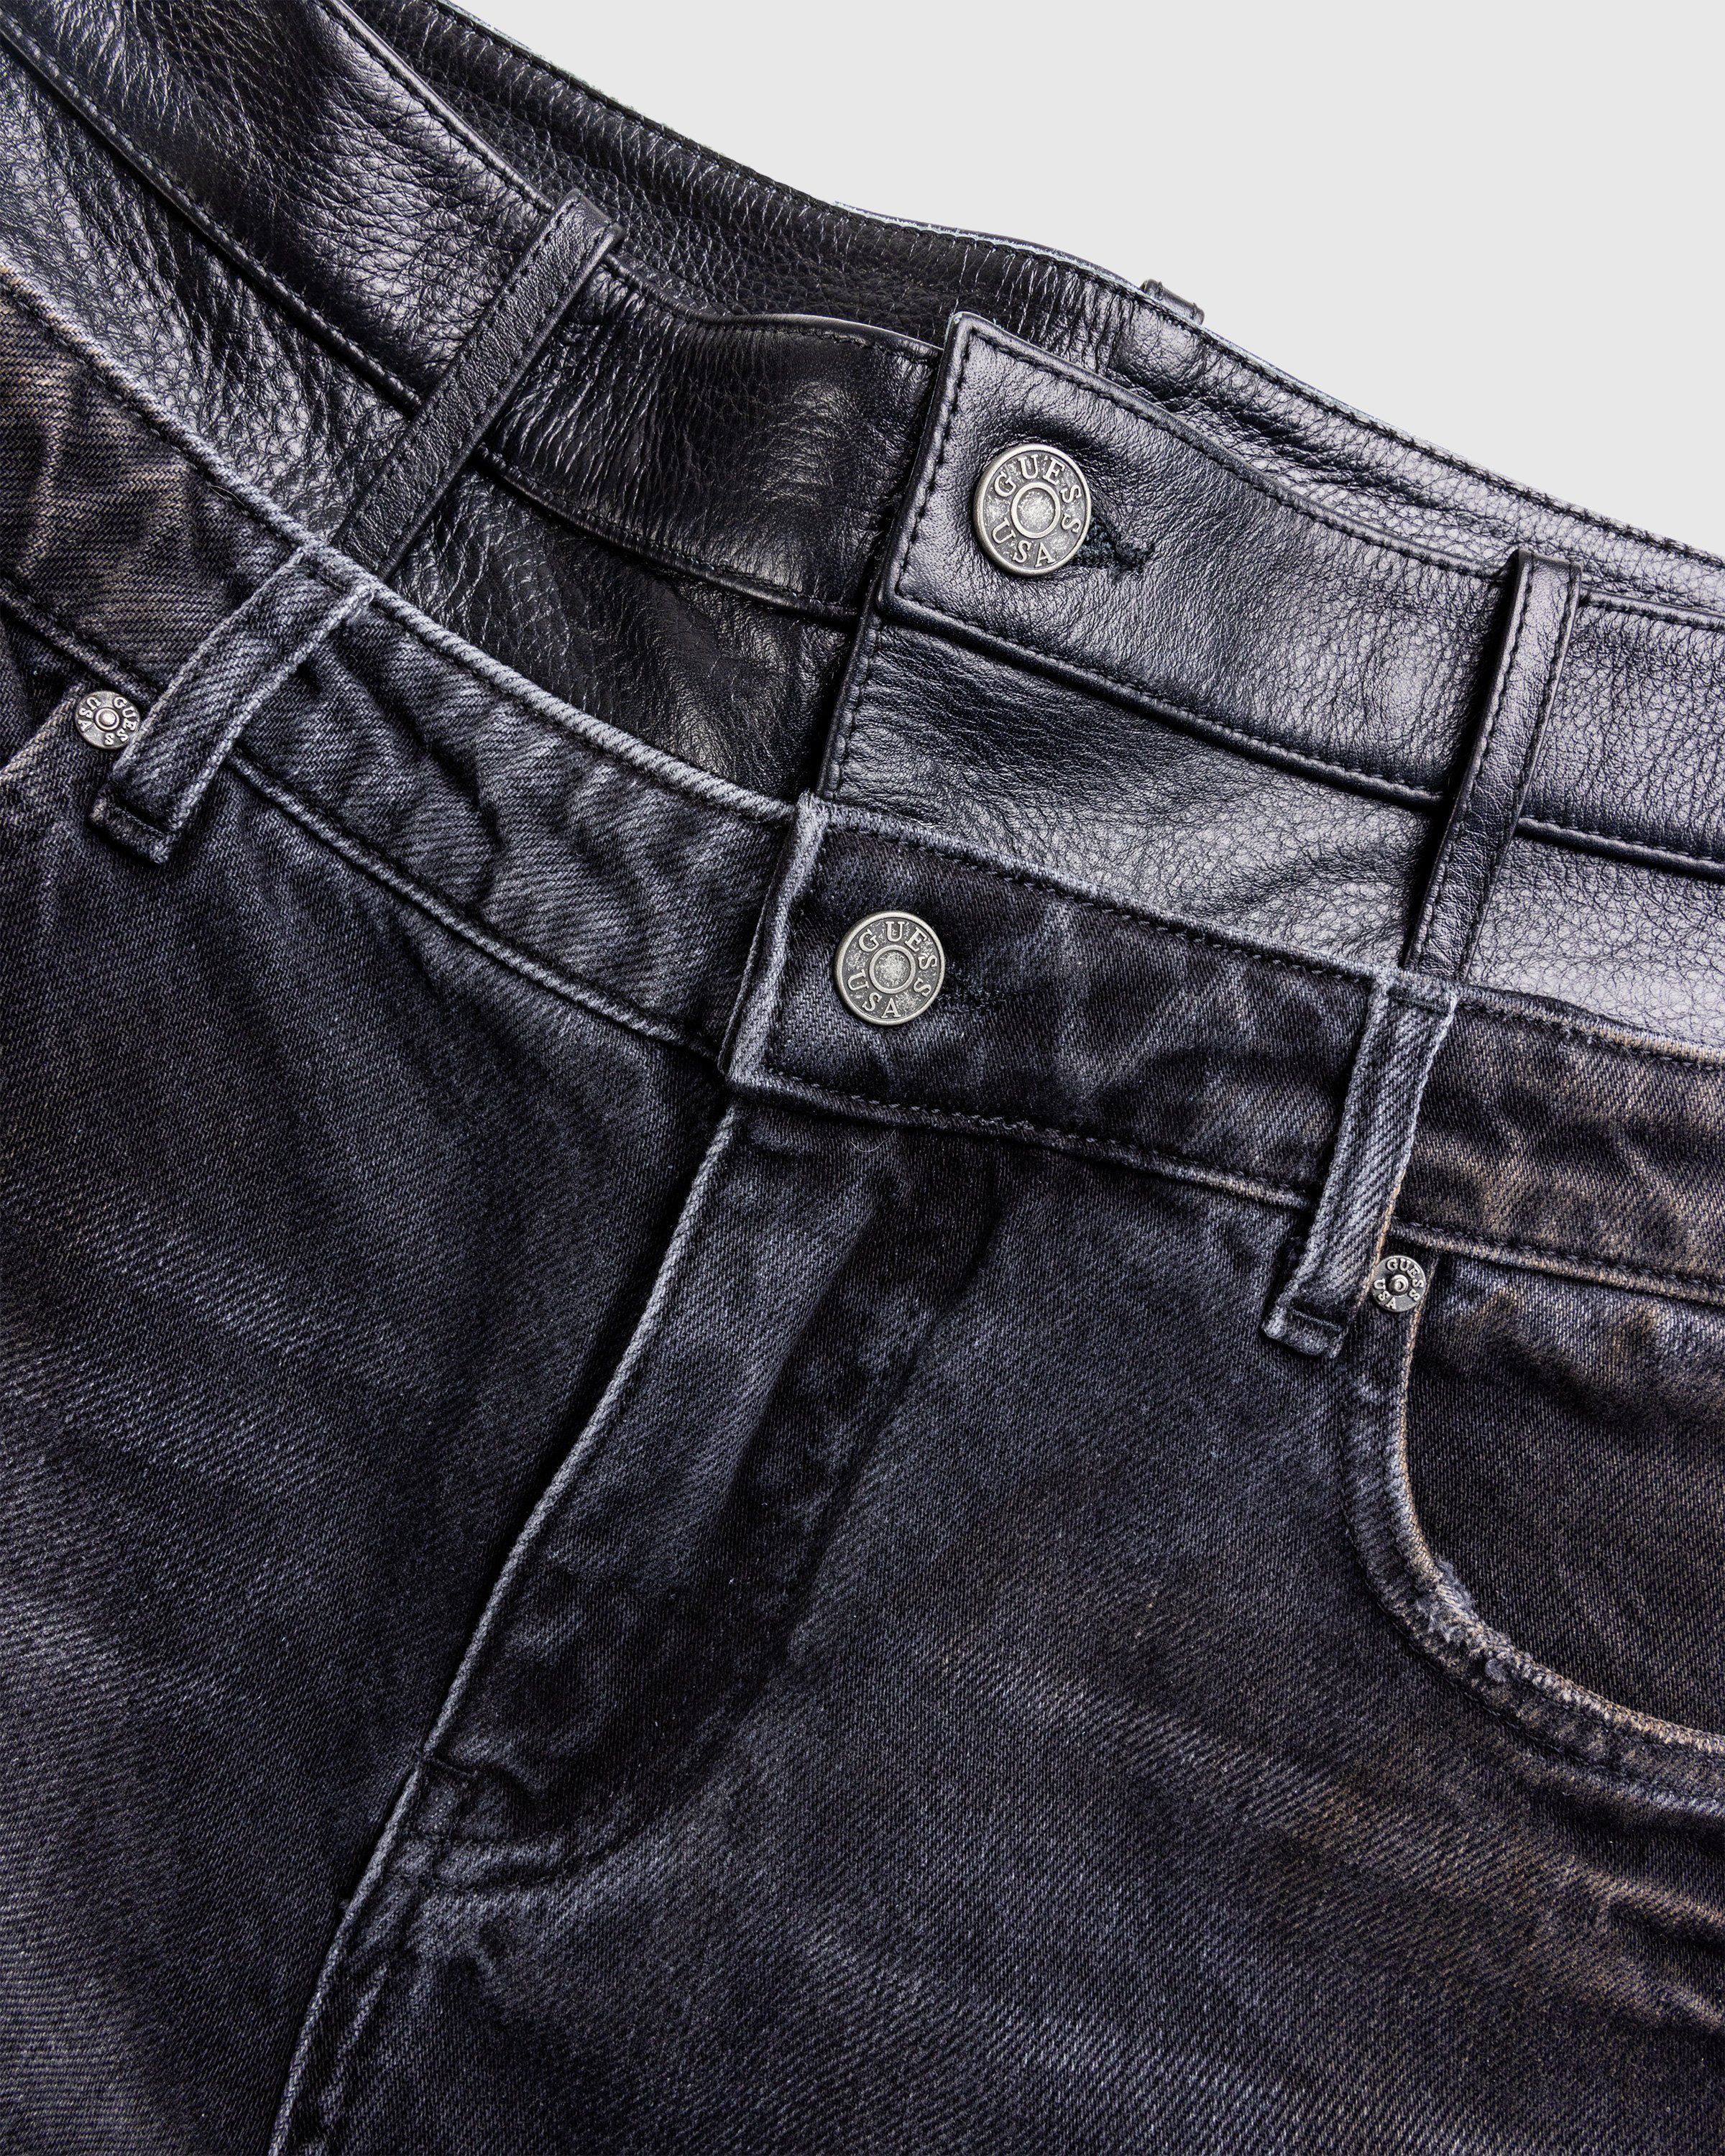 Guess USA - Gusa Contrast Flare Pant Gusa Aged Black Wash - Clothing - Black - Image 6